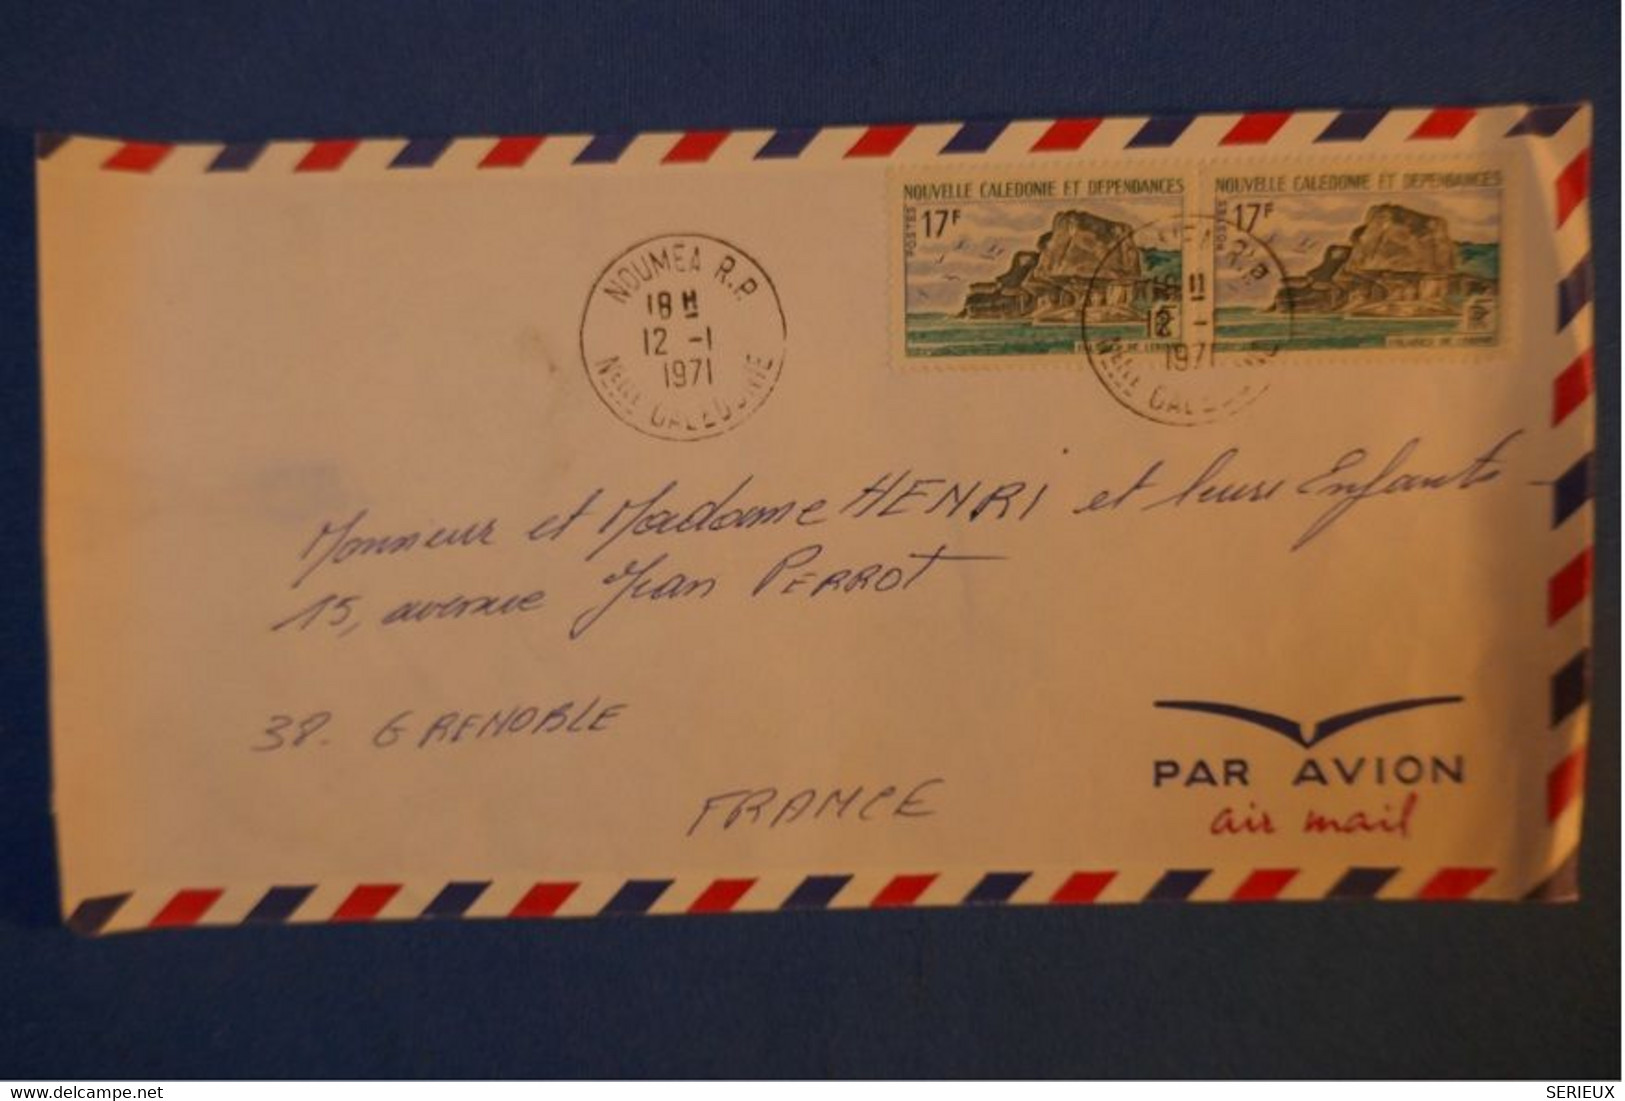 402 NOUVELLE CALEDONIE BELLE LETTRE 1971 NOUMEA PAR AVION A GRENOBLE FRANCE + PAIRE TIMBRES - Storia Postale